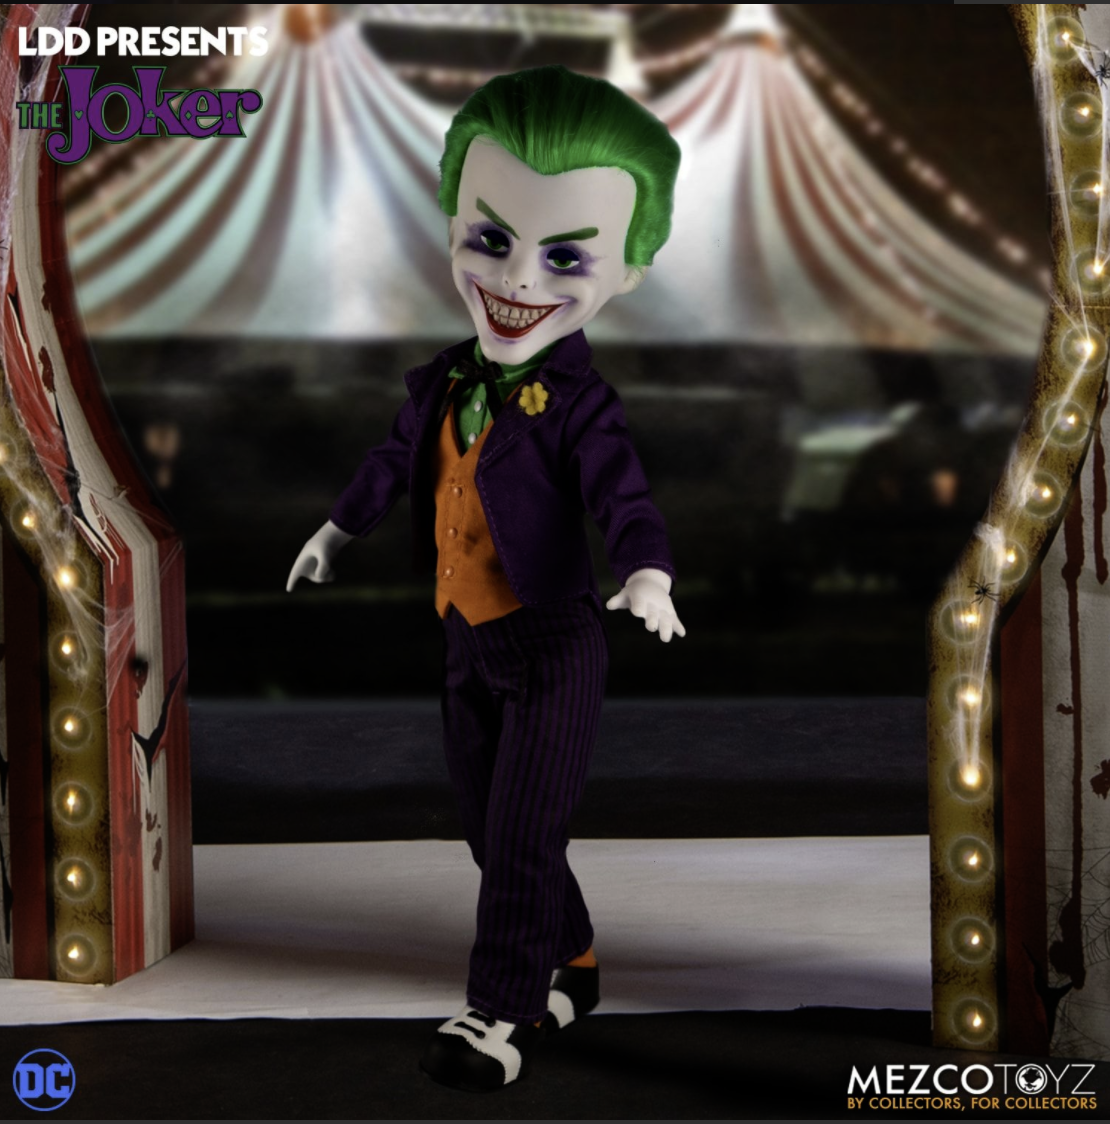 Gift Guide - The Joker